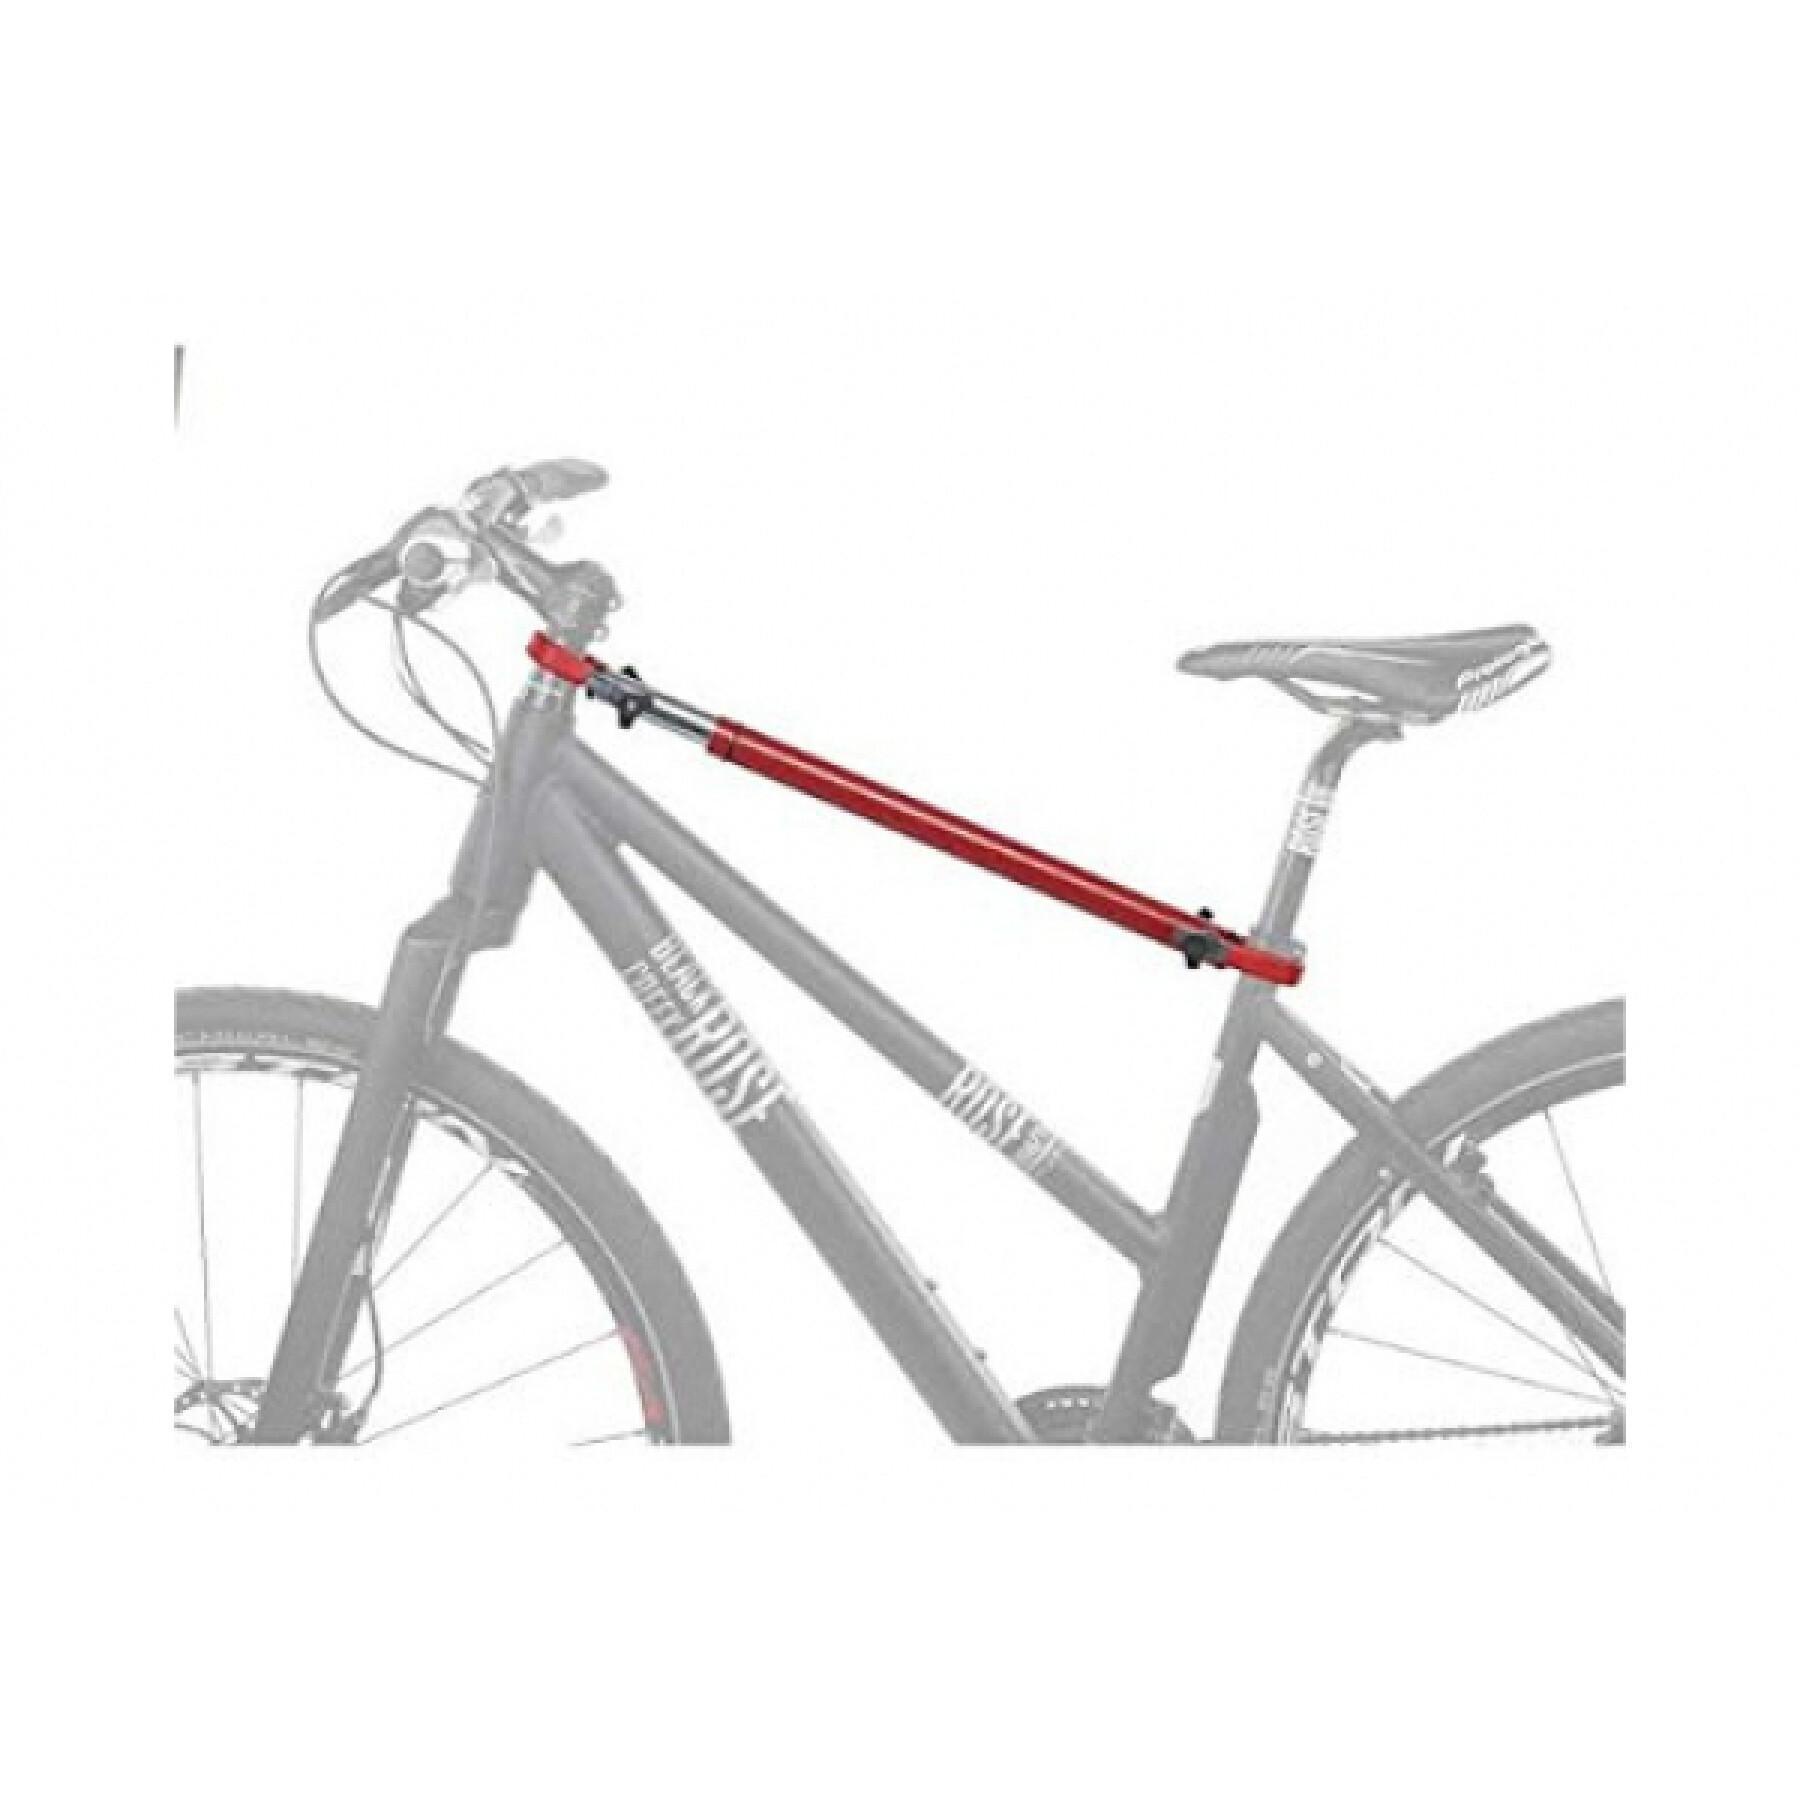 Barra de transporte para el portabicicletas y compatible con las bicicletas Peruzzo